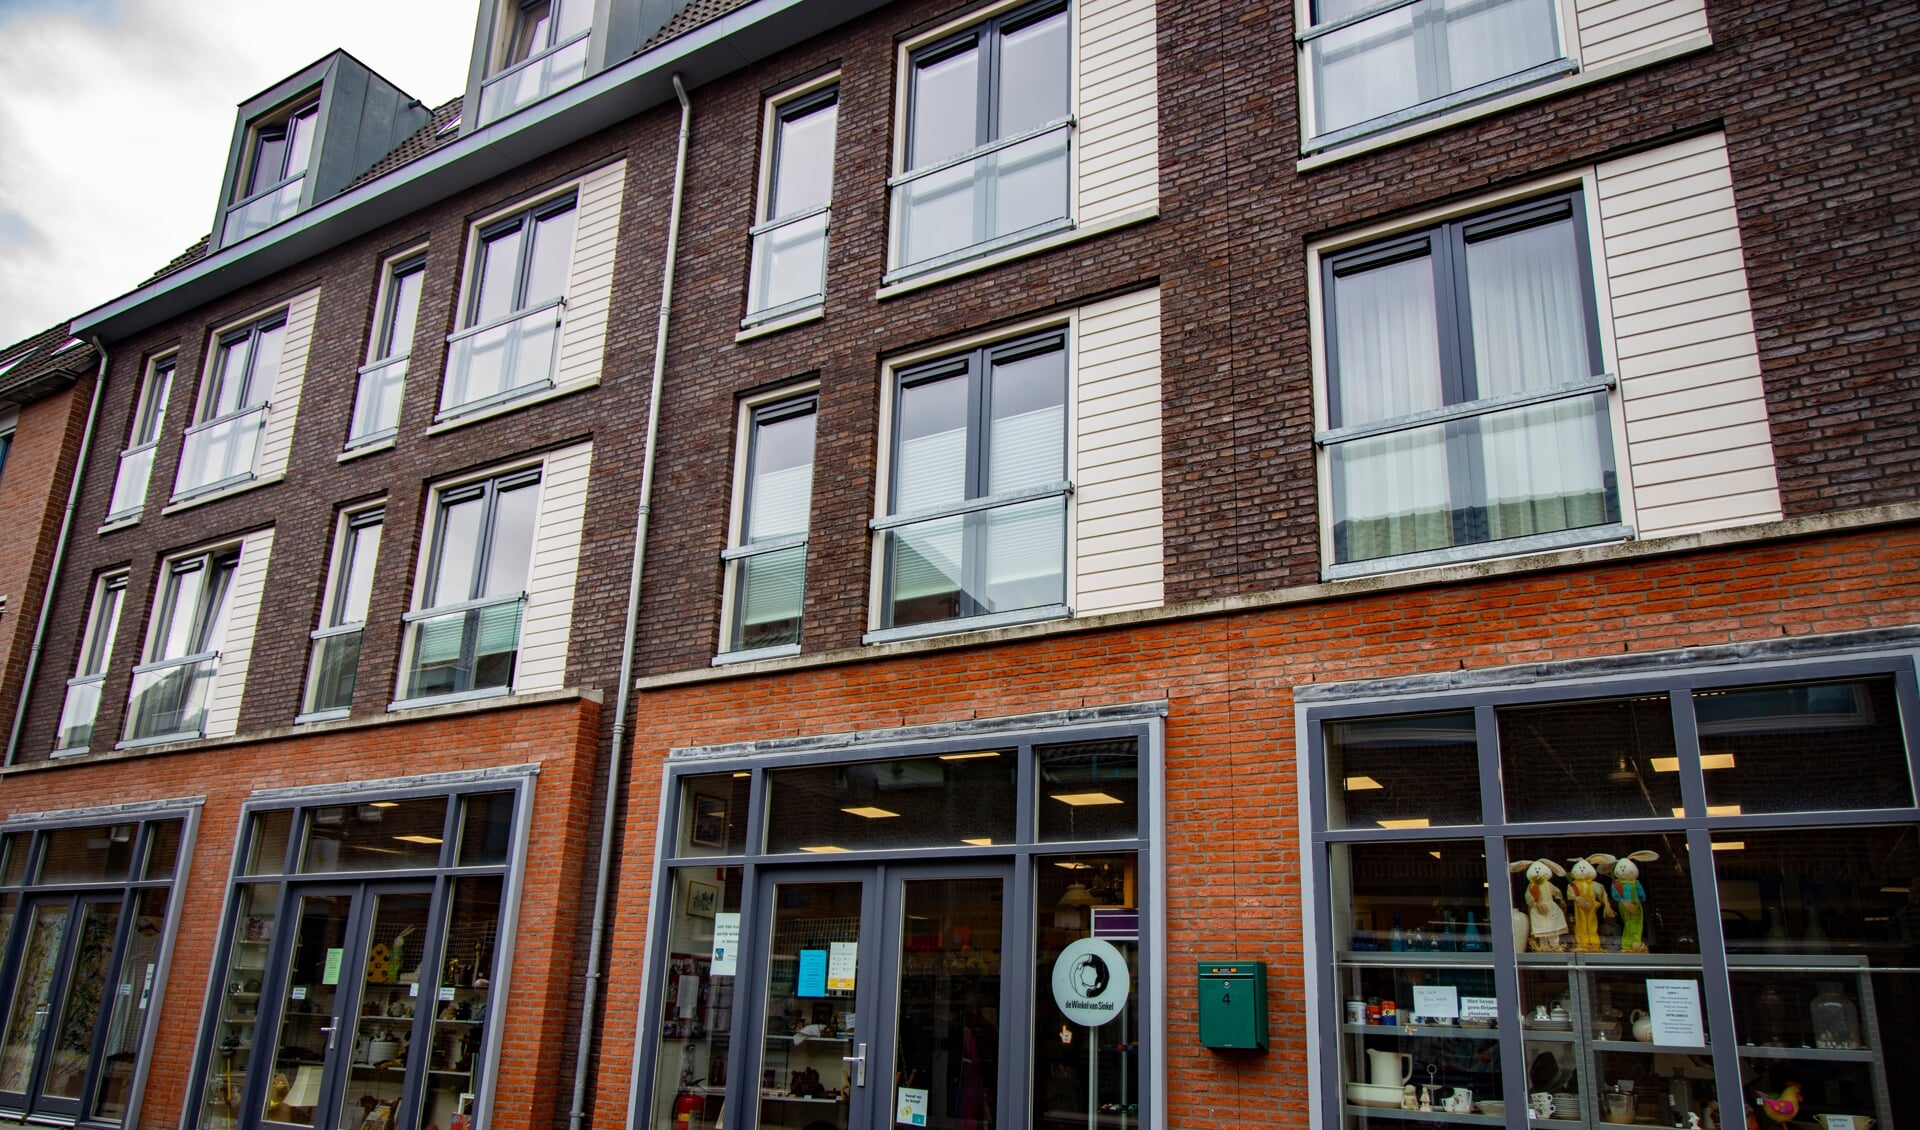 Winkel van Sinkel, Schoolstraat 4 in Venray.